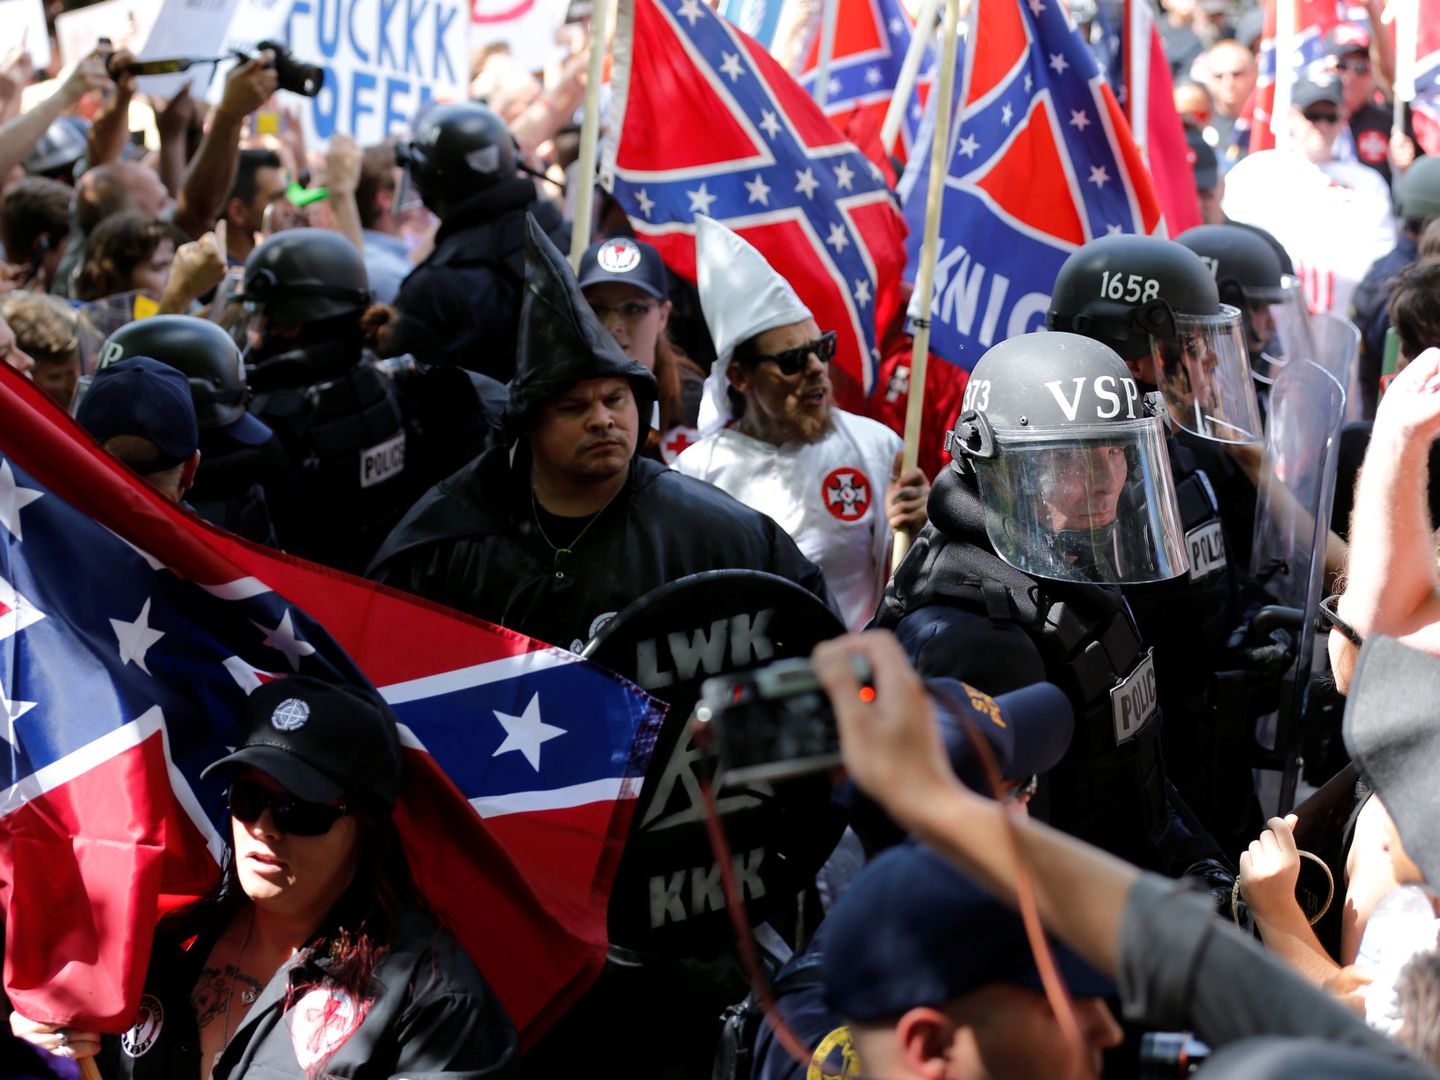 Miembros del Ku Klux Klan en Charlottesville, verano de 2017. (Reuters)